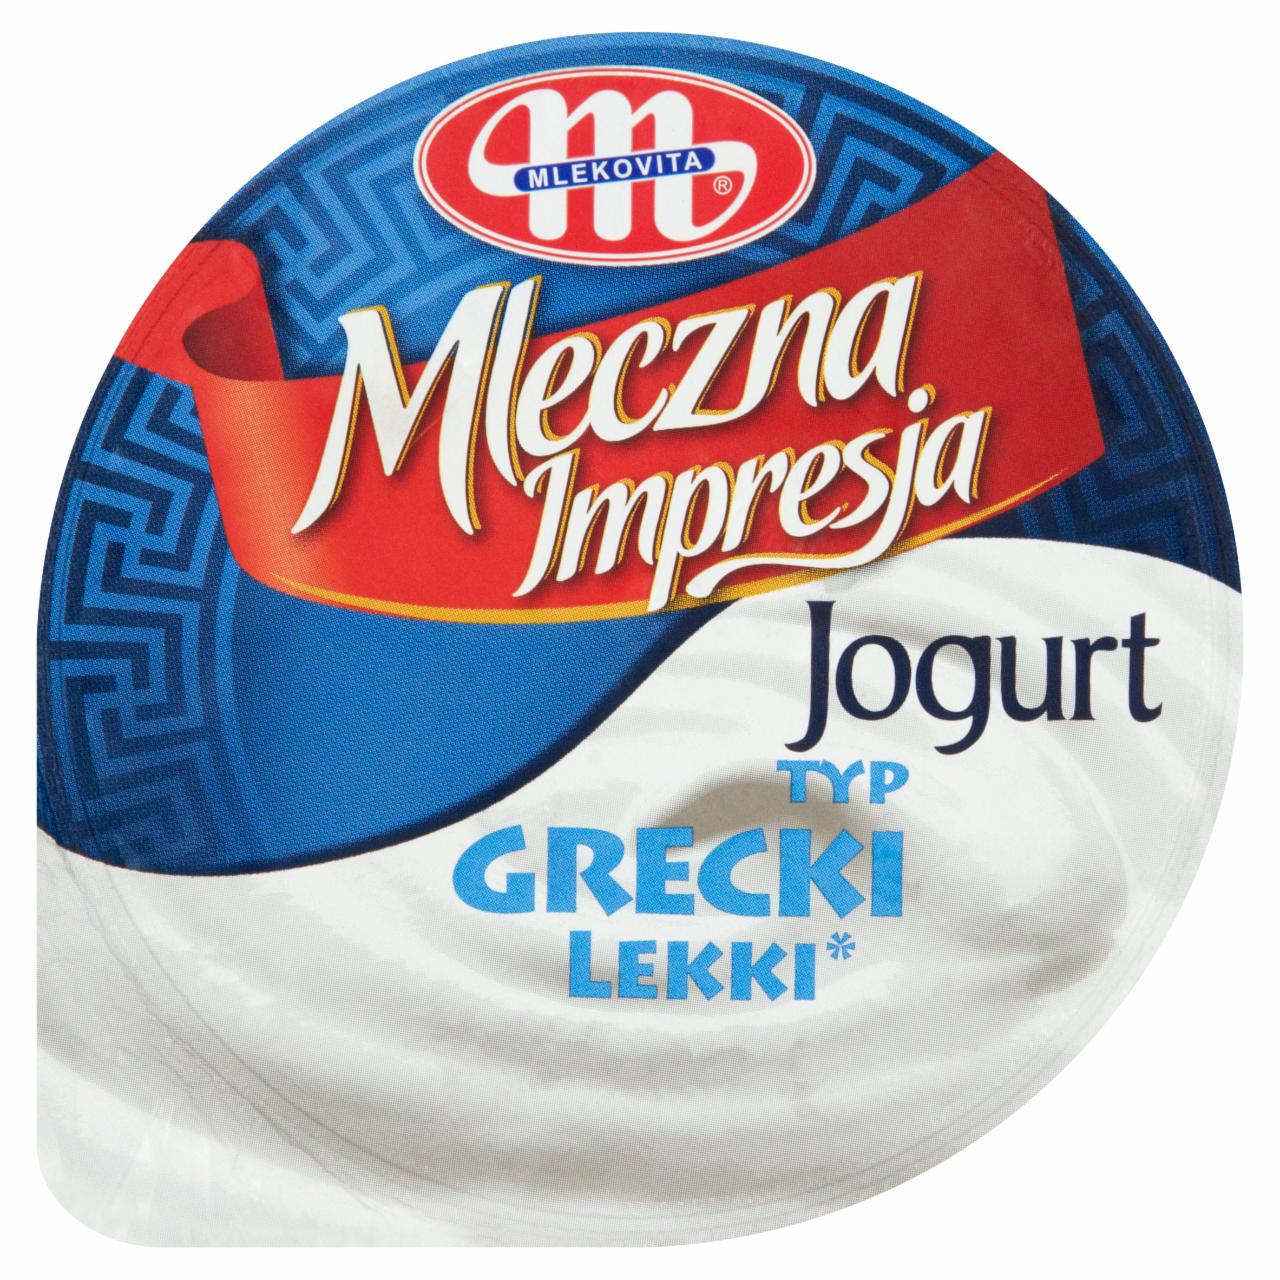 Zdjęcia - Mlekovita Mleczna Impresja Jogurt typ grecki lekki 150 g